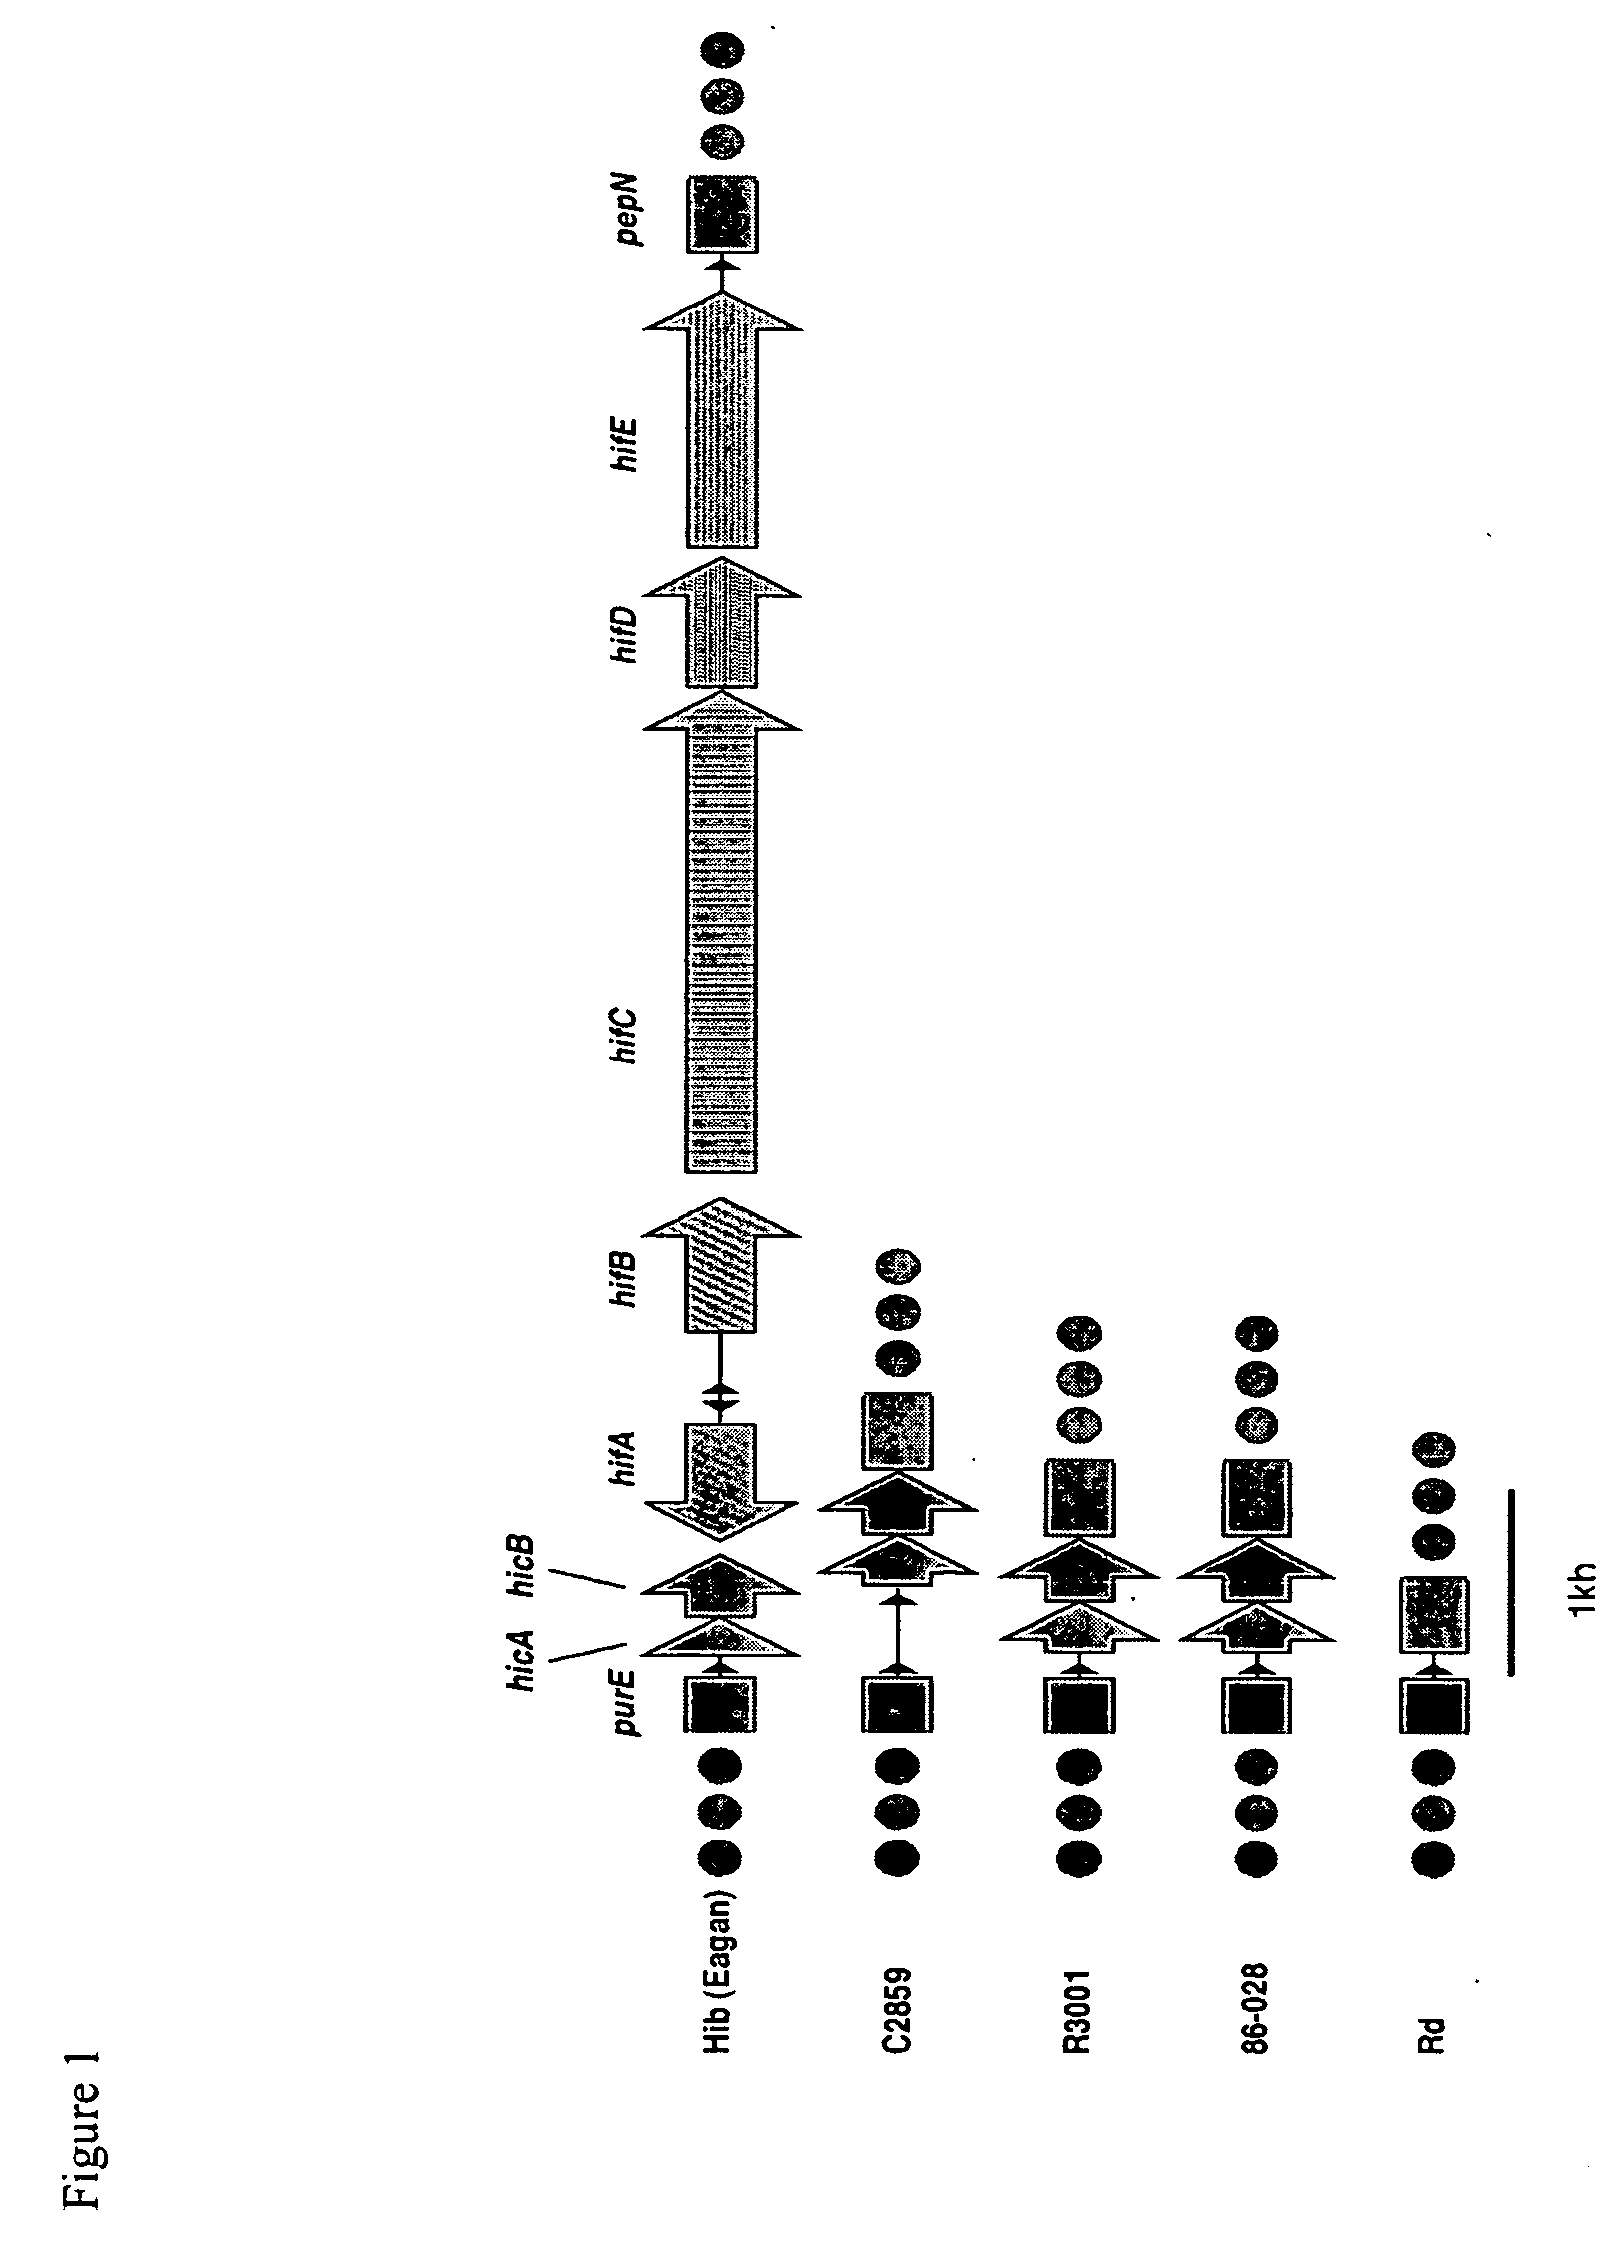 Genes of an otitis media isolate of haemophilus influenzae